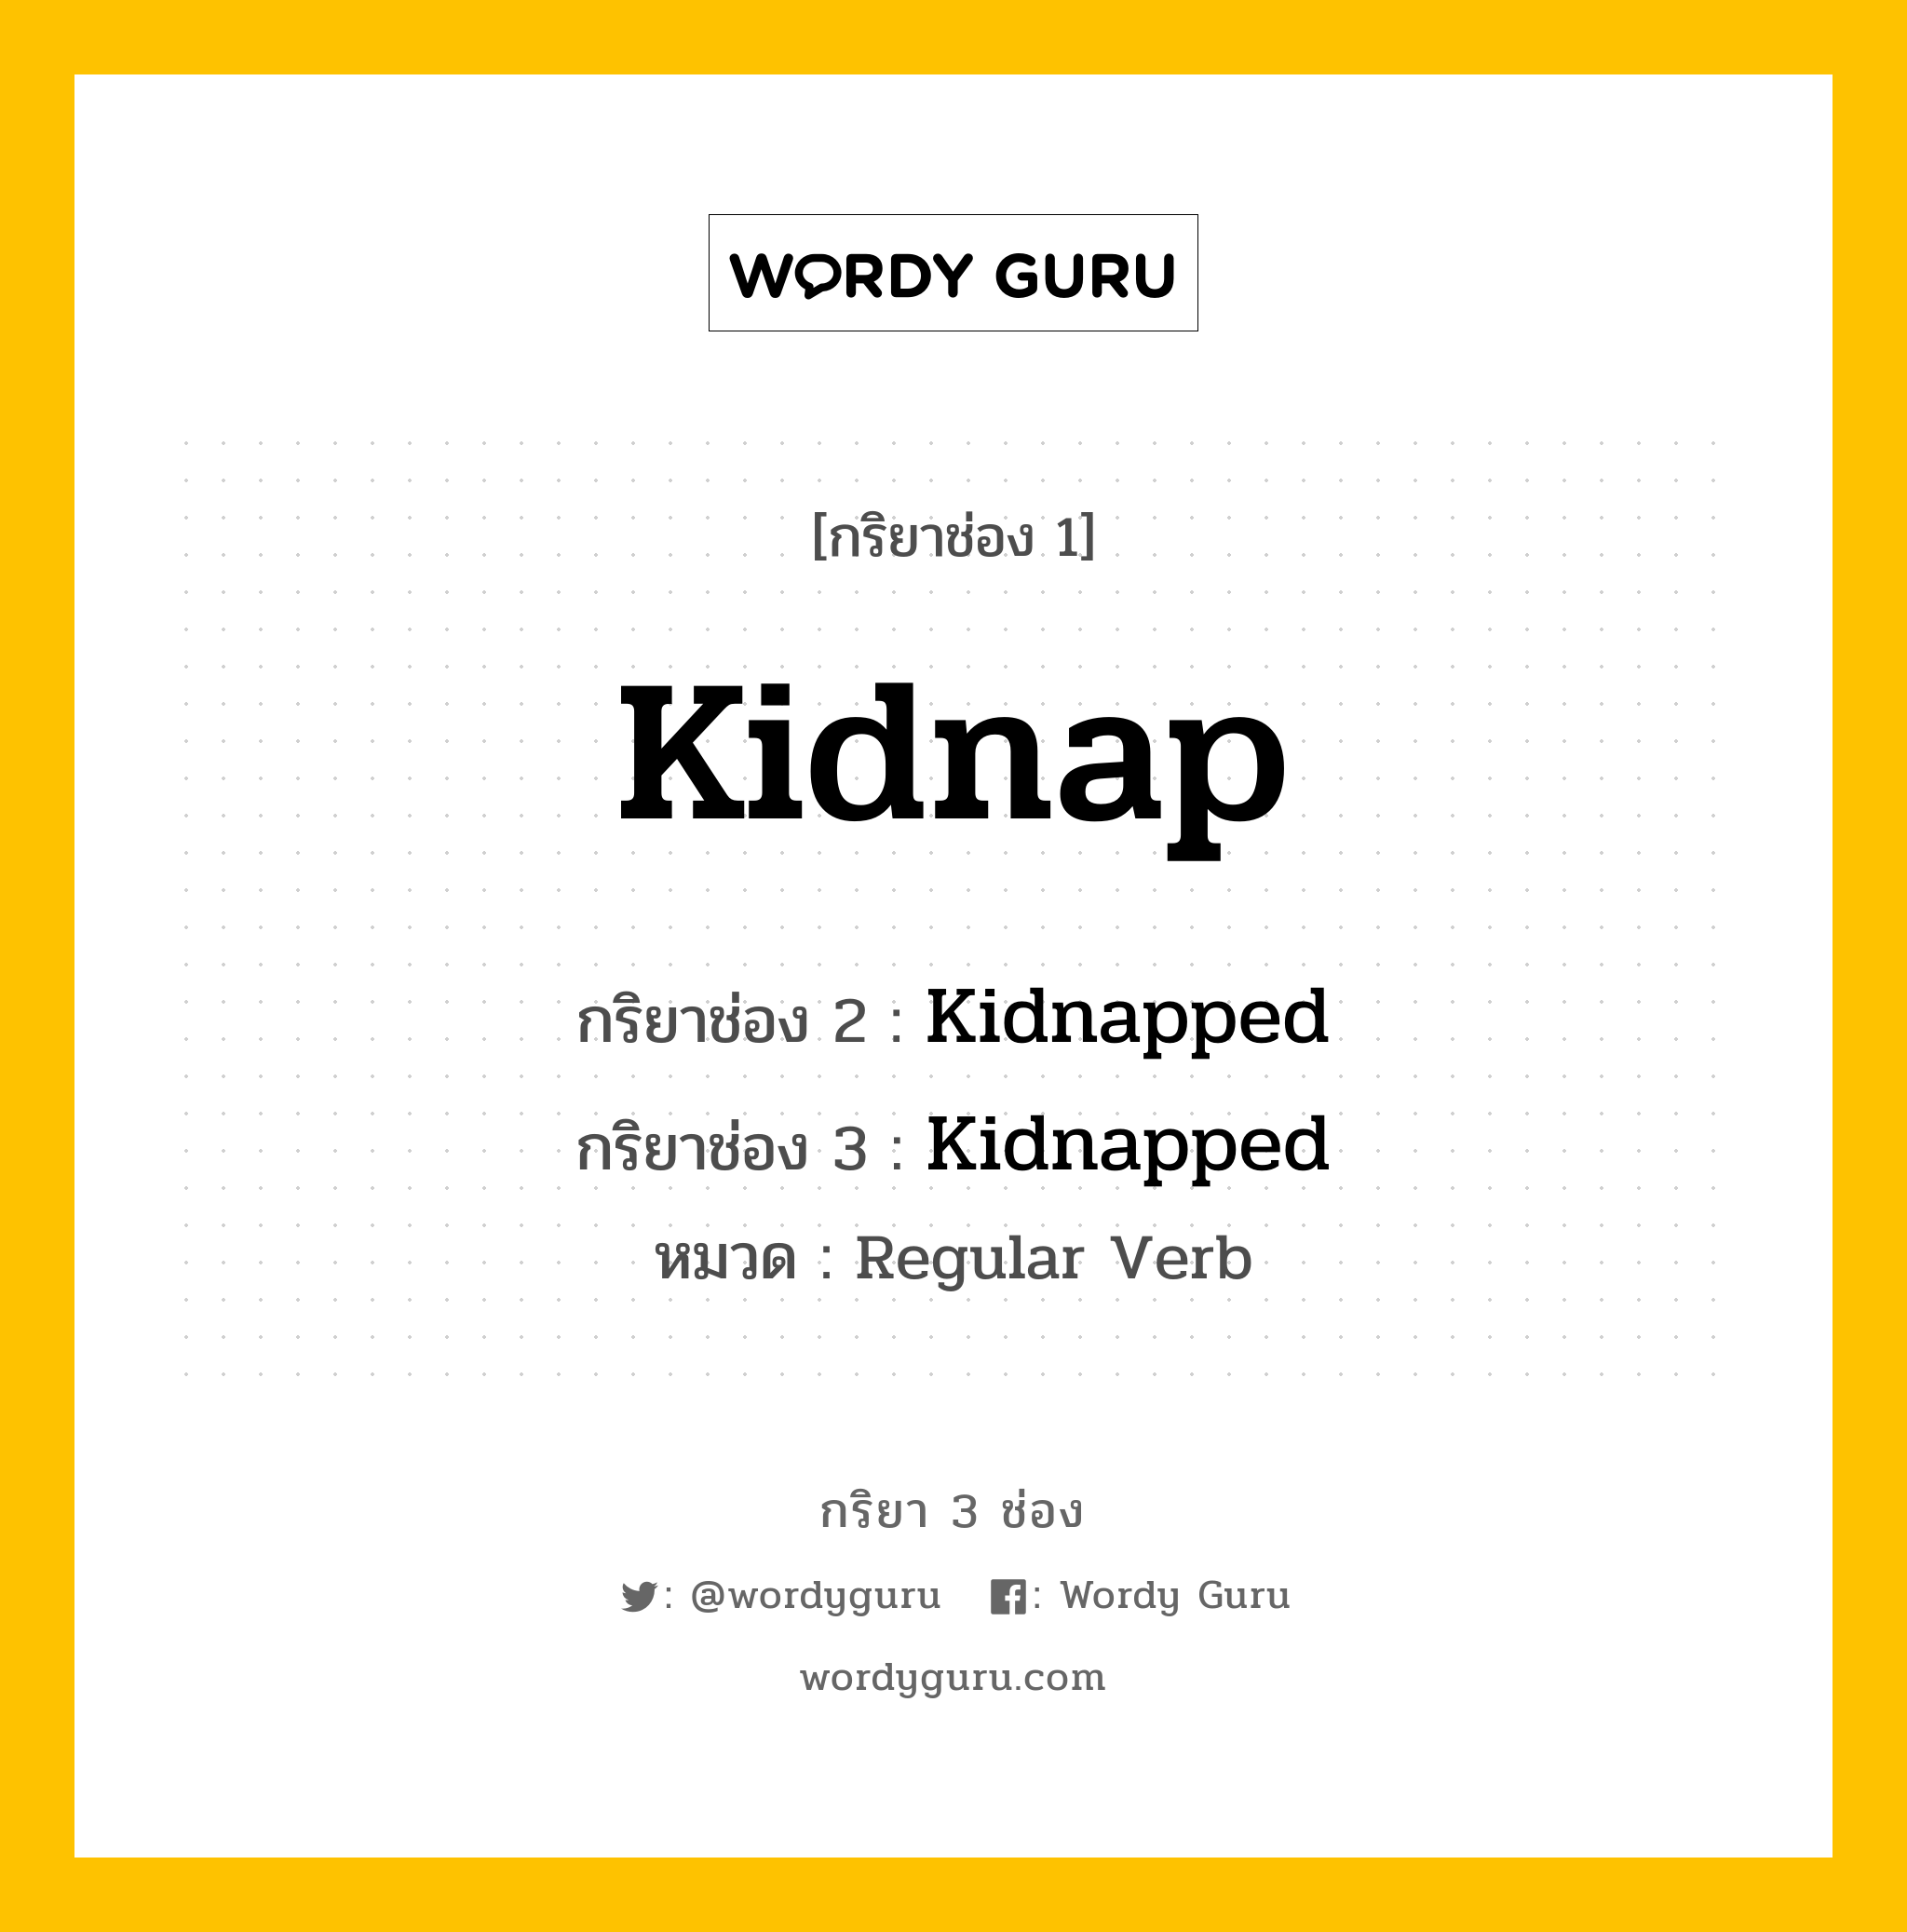 กริยา 3 ช่อง: Kidnap ช่อง 2 Kidnap ช่อง 3 คืออะไร, กริยาช่อง 1 Kidnap กริยาช่อง 2 Kidnapped กริยาช่อง 3 Kidnapped หมวด Regular Verb หมวด Regular Verb